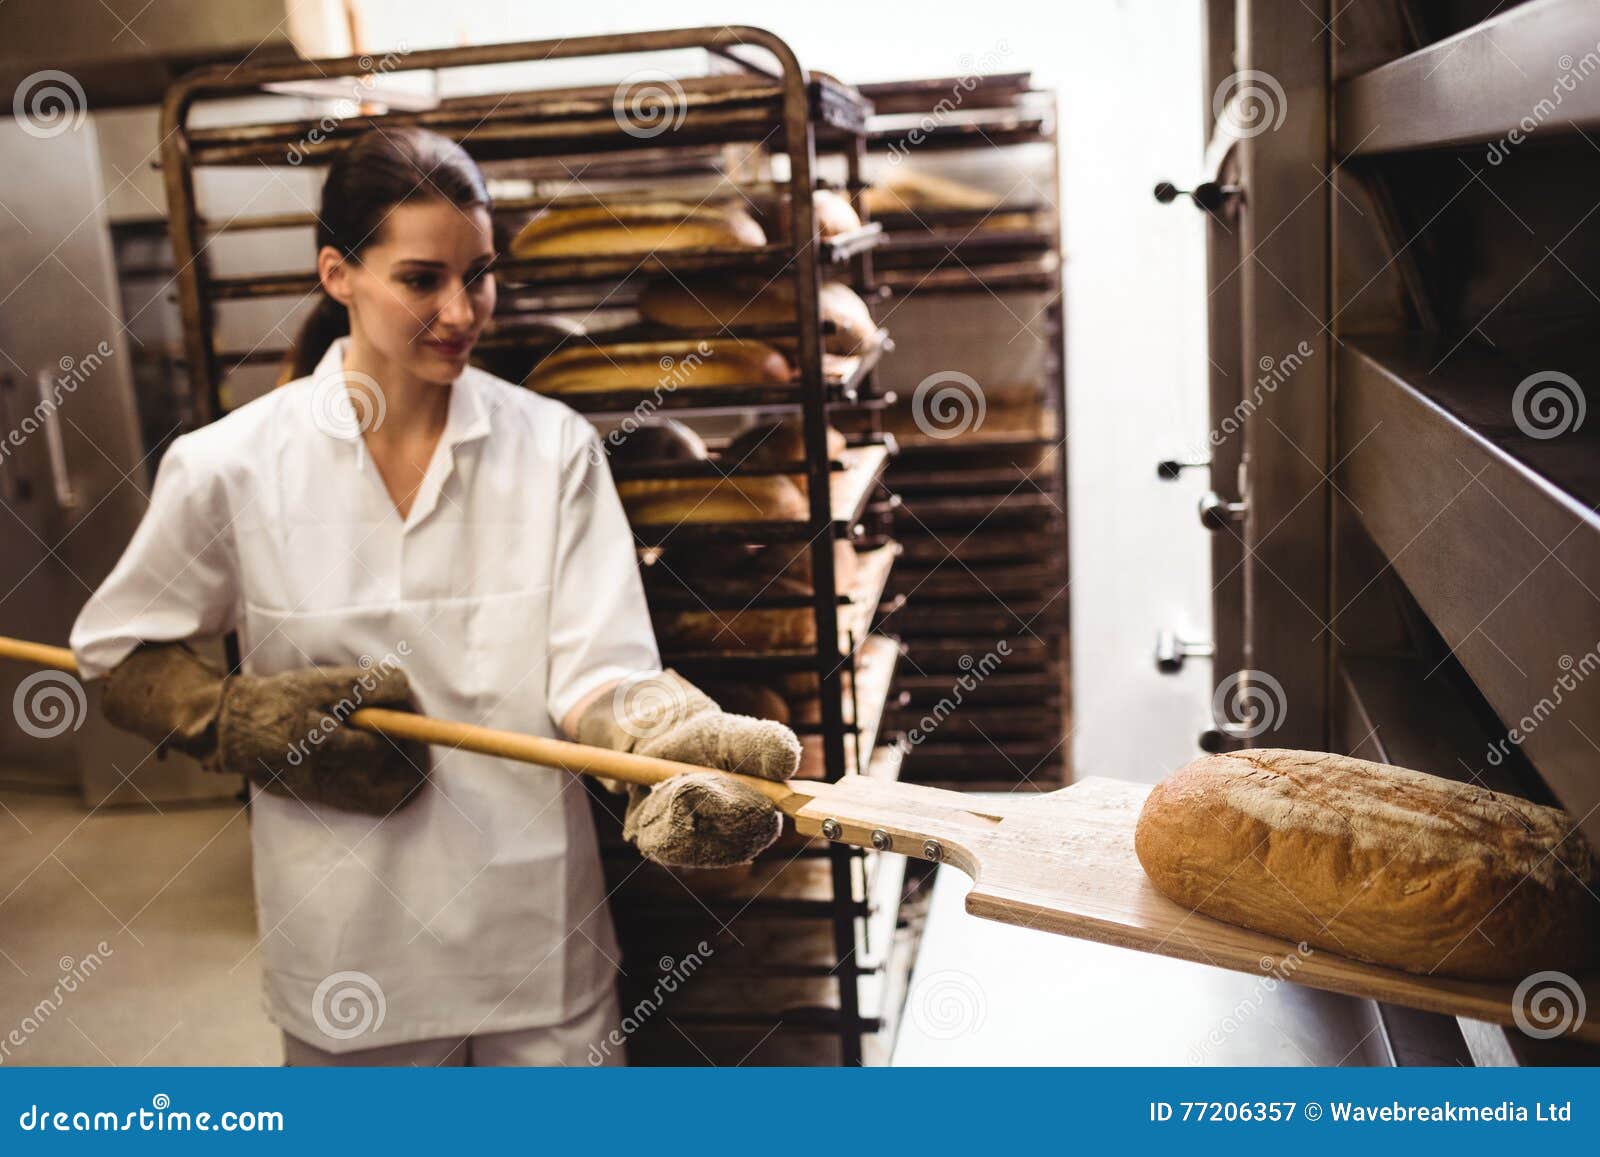 Женщина печет хлеб. Девушка печет хлеб. Девушка пекарь. Пекарь печет хлеб. Девушка пекарь с хлебом.